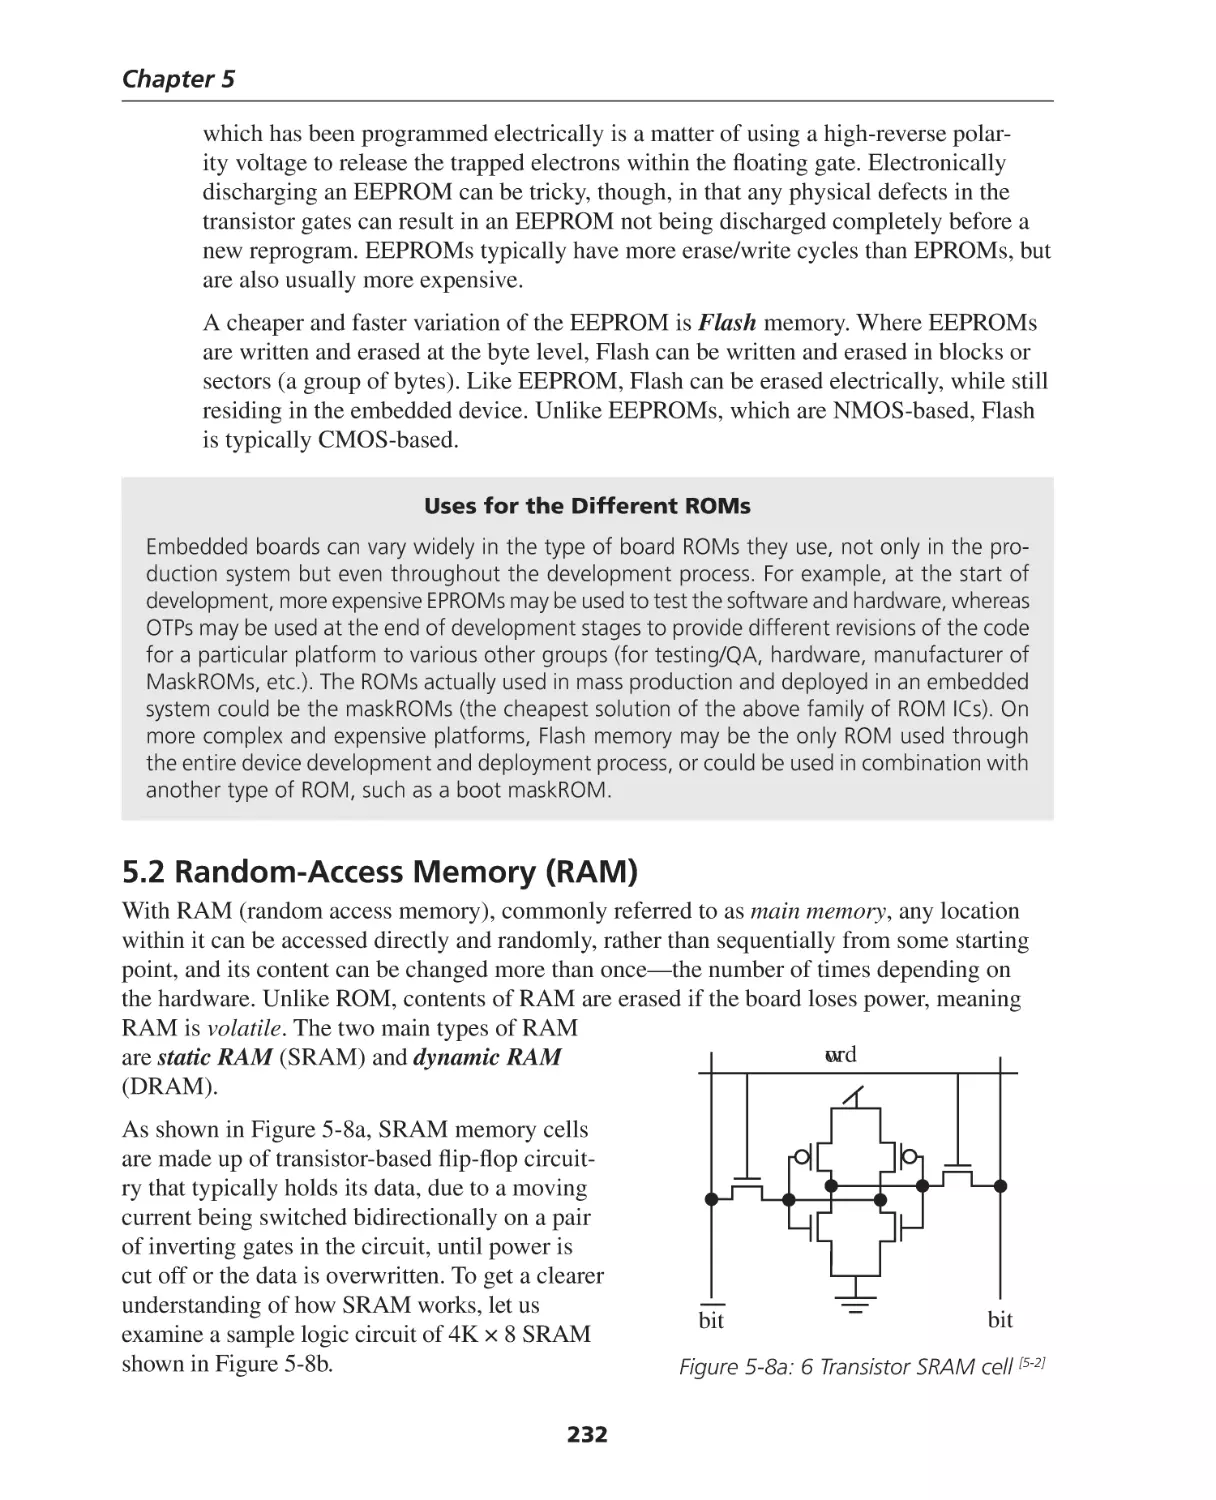 5.2 Random-Access Memory (RAM)